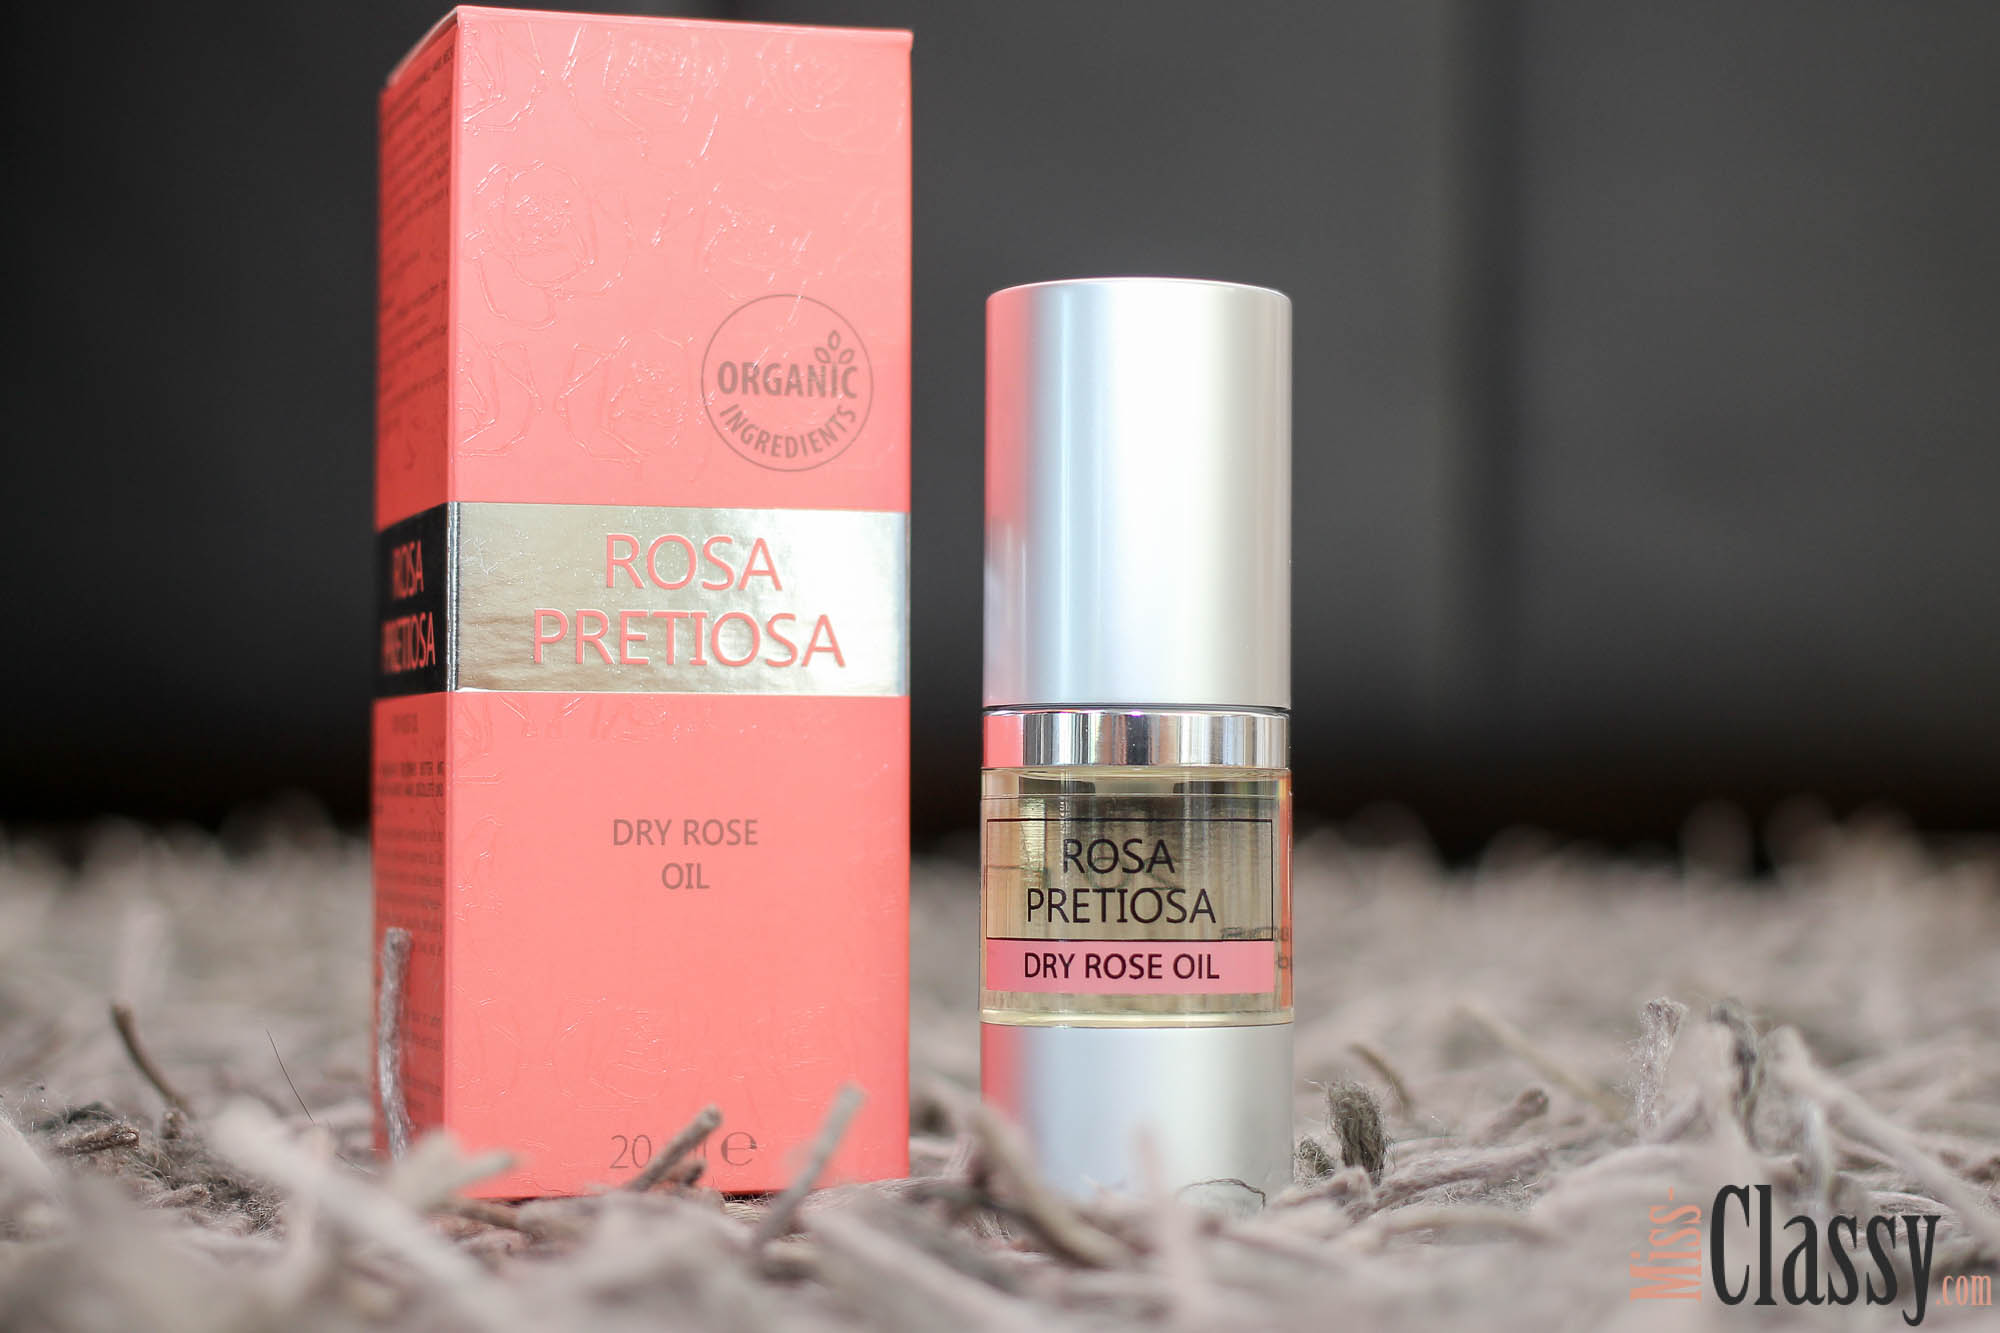 Natural Cosmetic - Rosa Pretiosa - Organic Ingredients - 24 hours Skin Care - Dry Rose Oil - Rosenöl